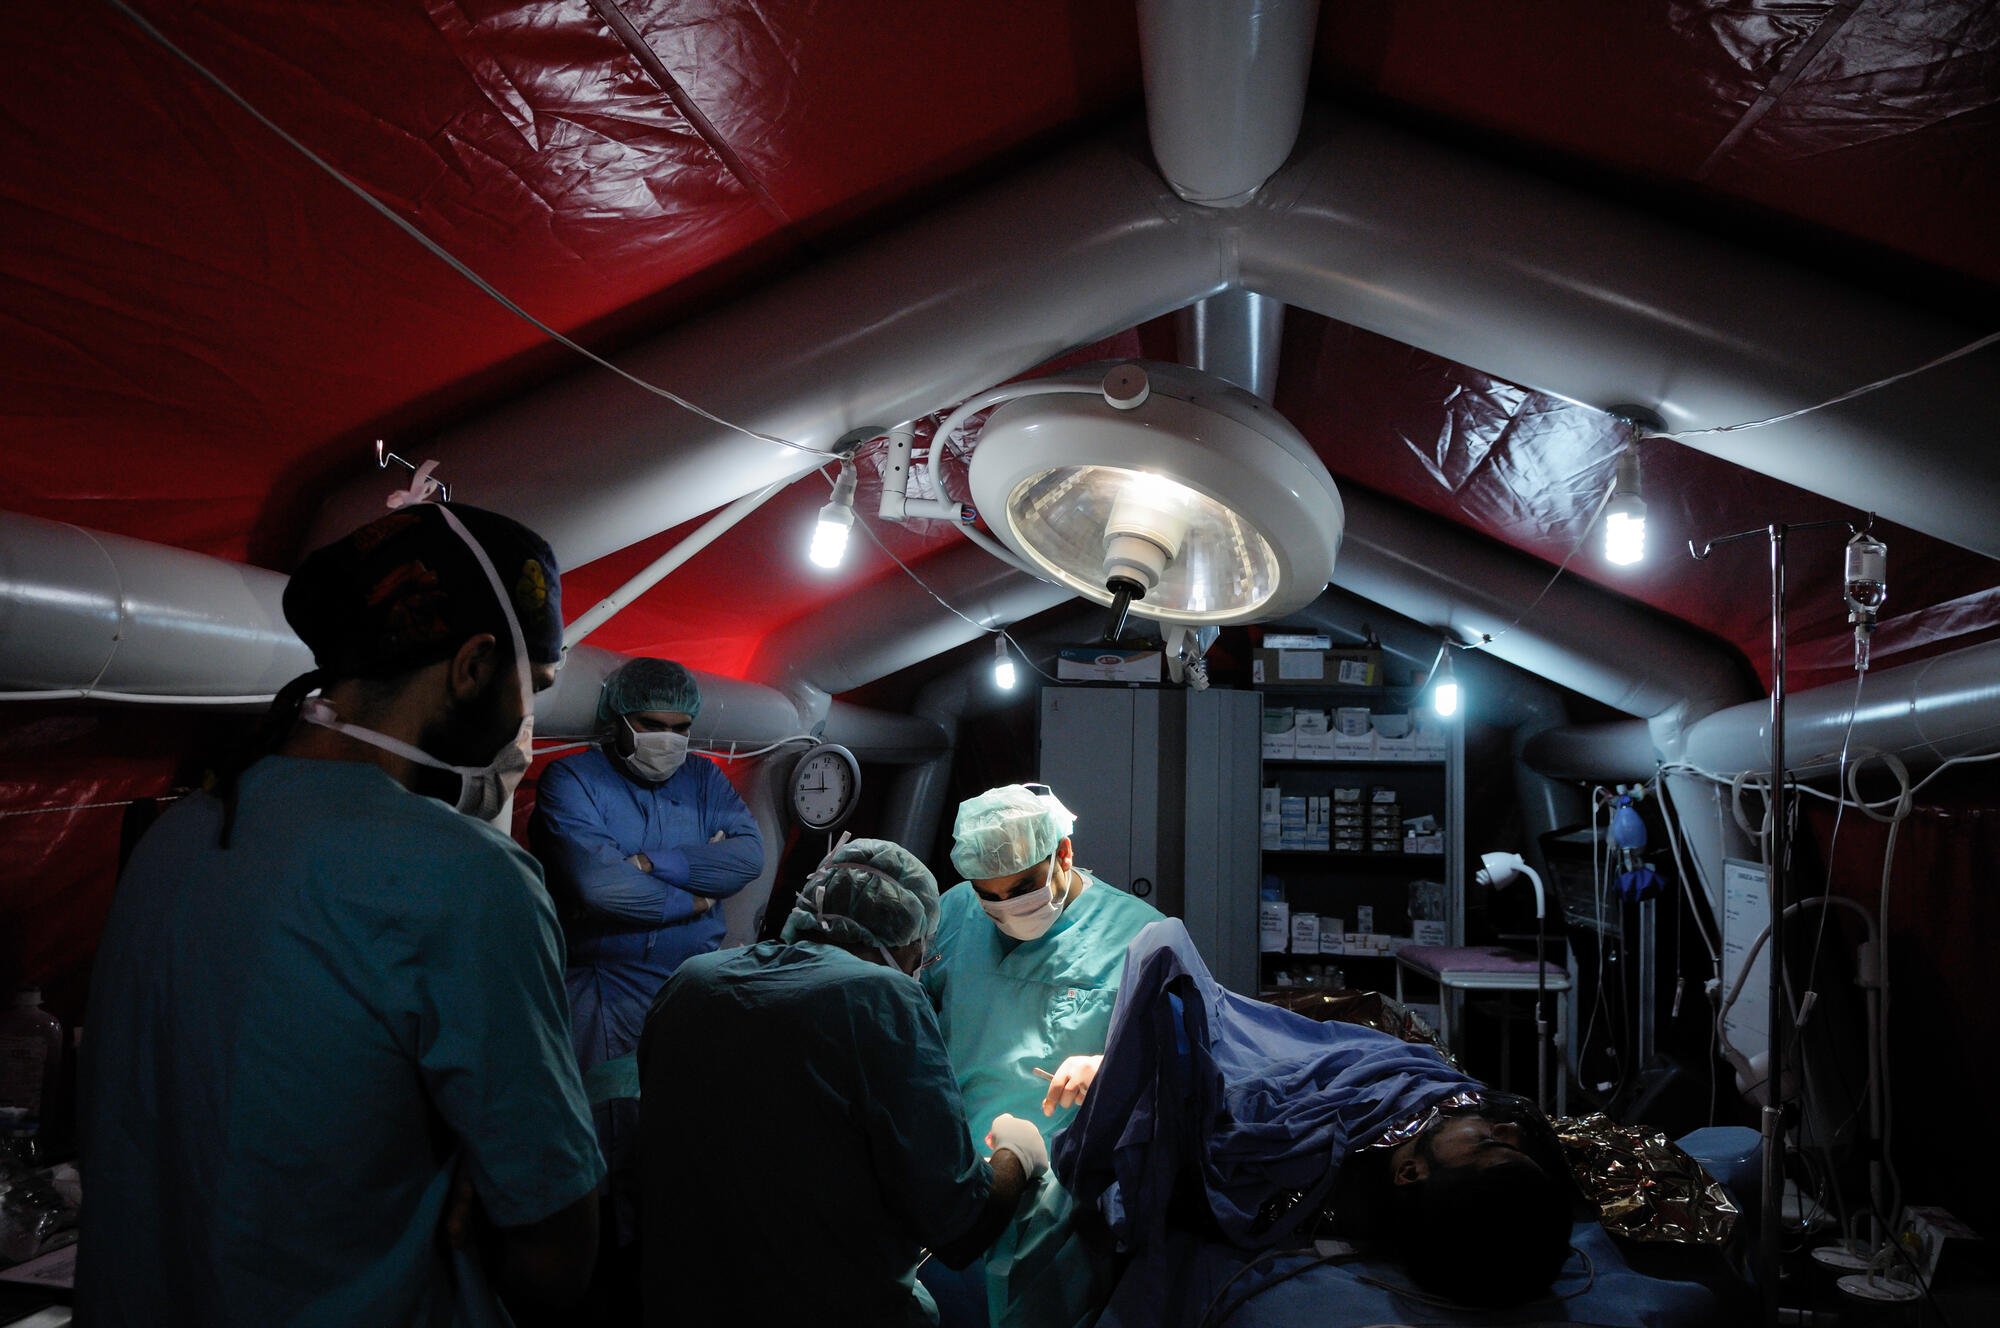 2012年12月——在意料之外場所的前線醫院。隨著敘利亞西北部前線戰事轉移，無國界醫生將一個廢棄養雞場改建成前線醫院，提供緊急創傷手術以及初級和中級醫療護理。©Robin Meldrum/MSF